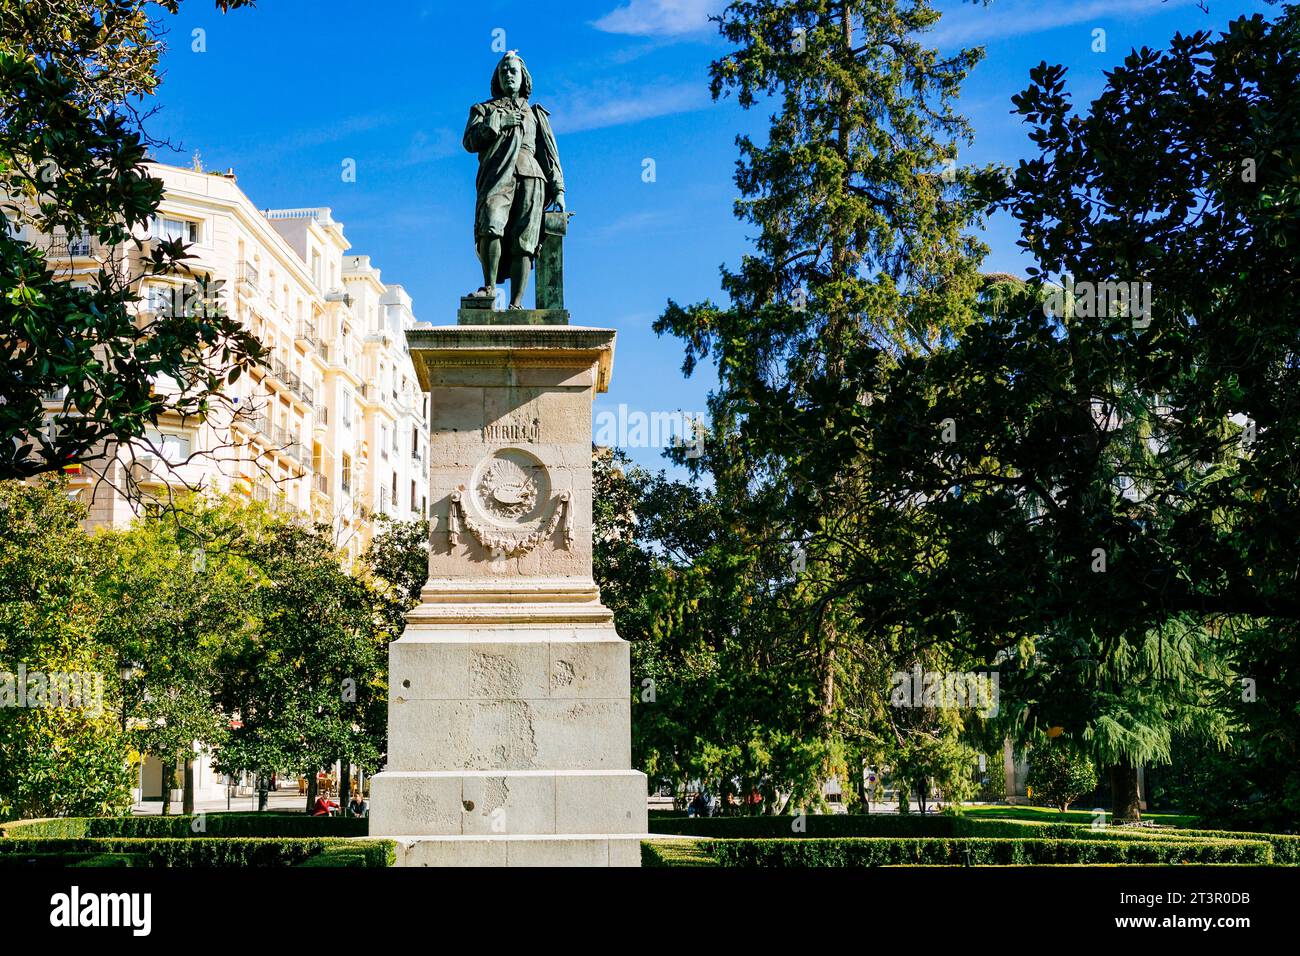 Monument dédié au peintre Murillo sur un côté du musée du Prado. Bartolomé Esteban Murillo était un peintre baroque espagnol. Bien qu'il soit bes Banque D'Images